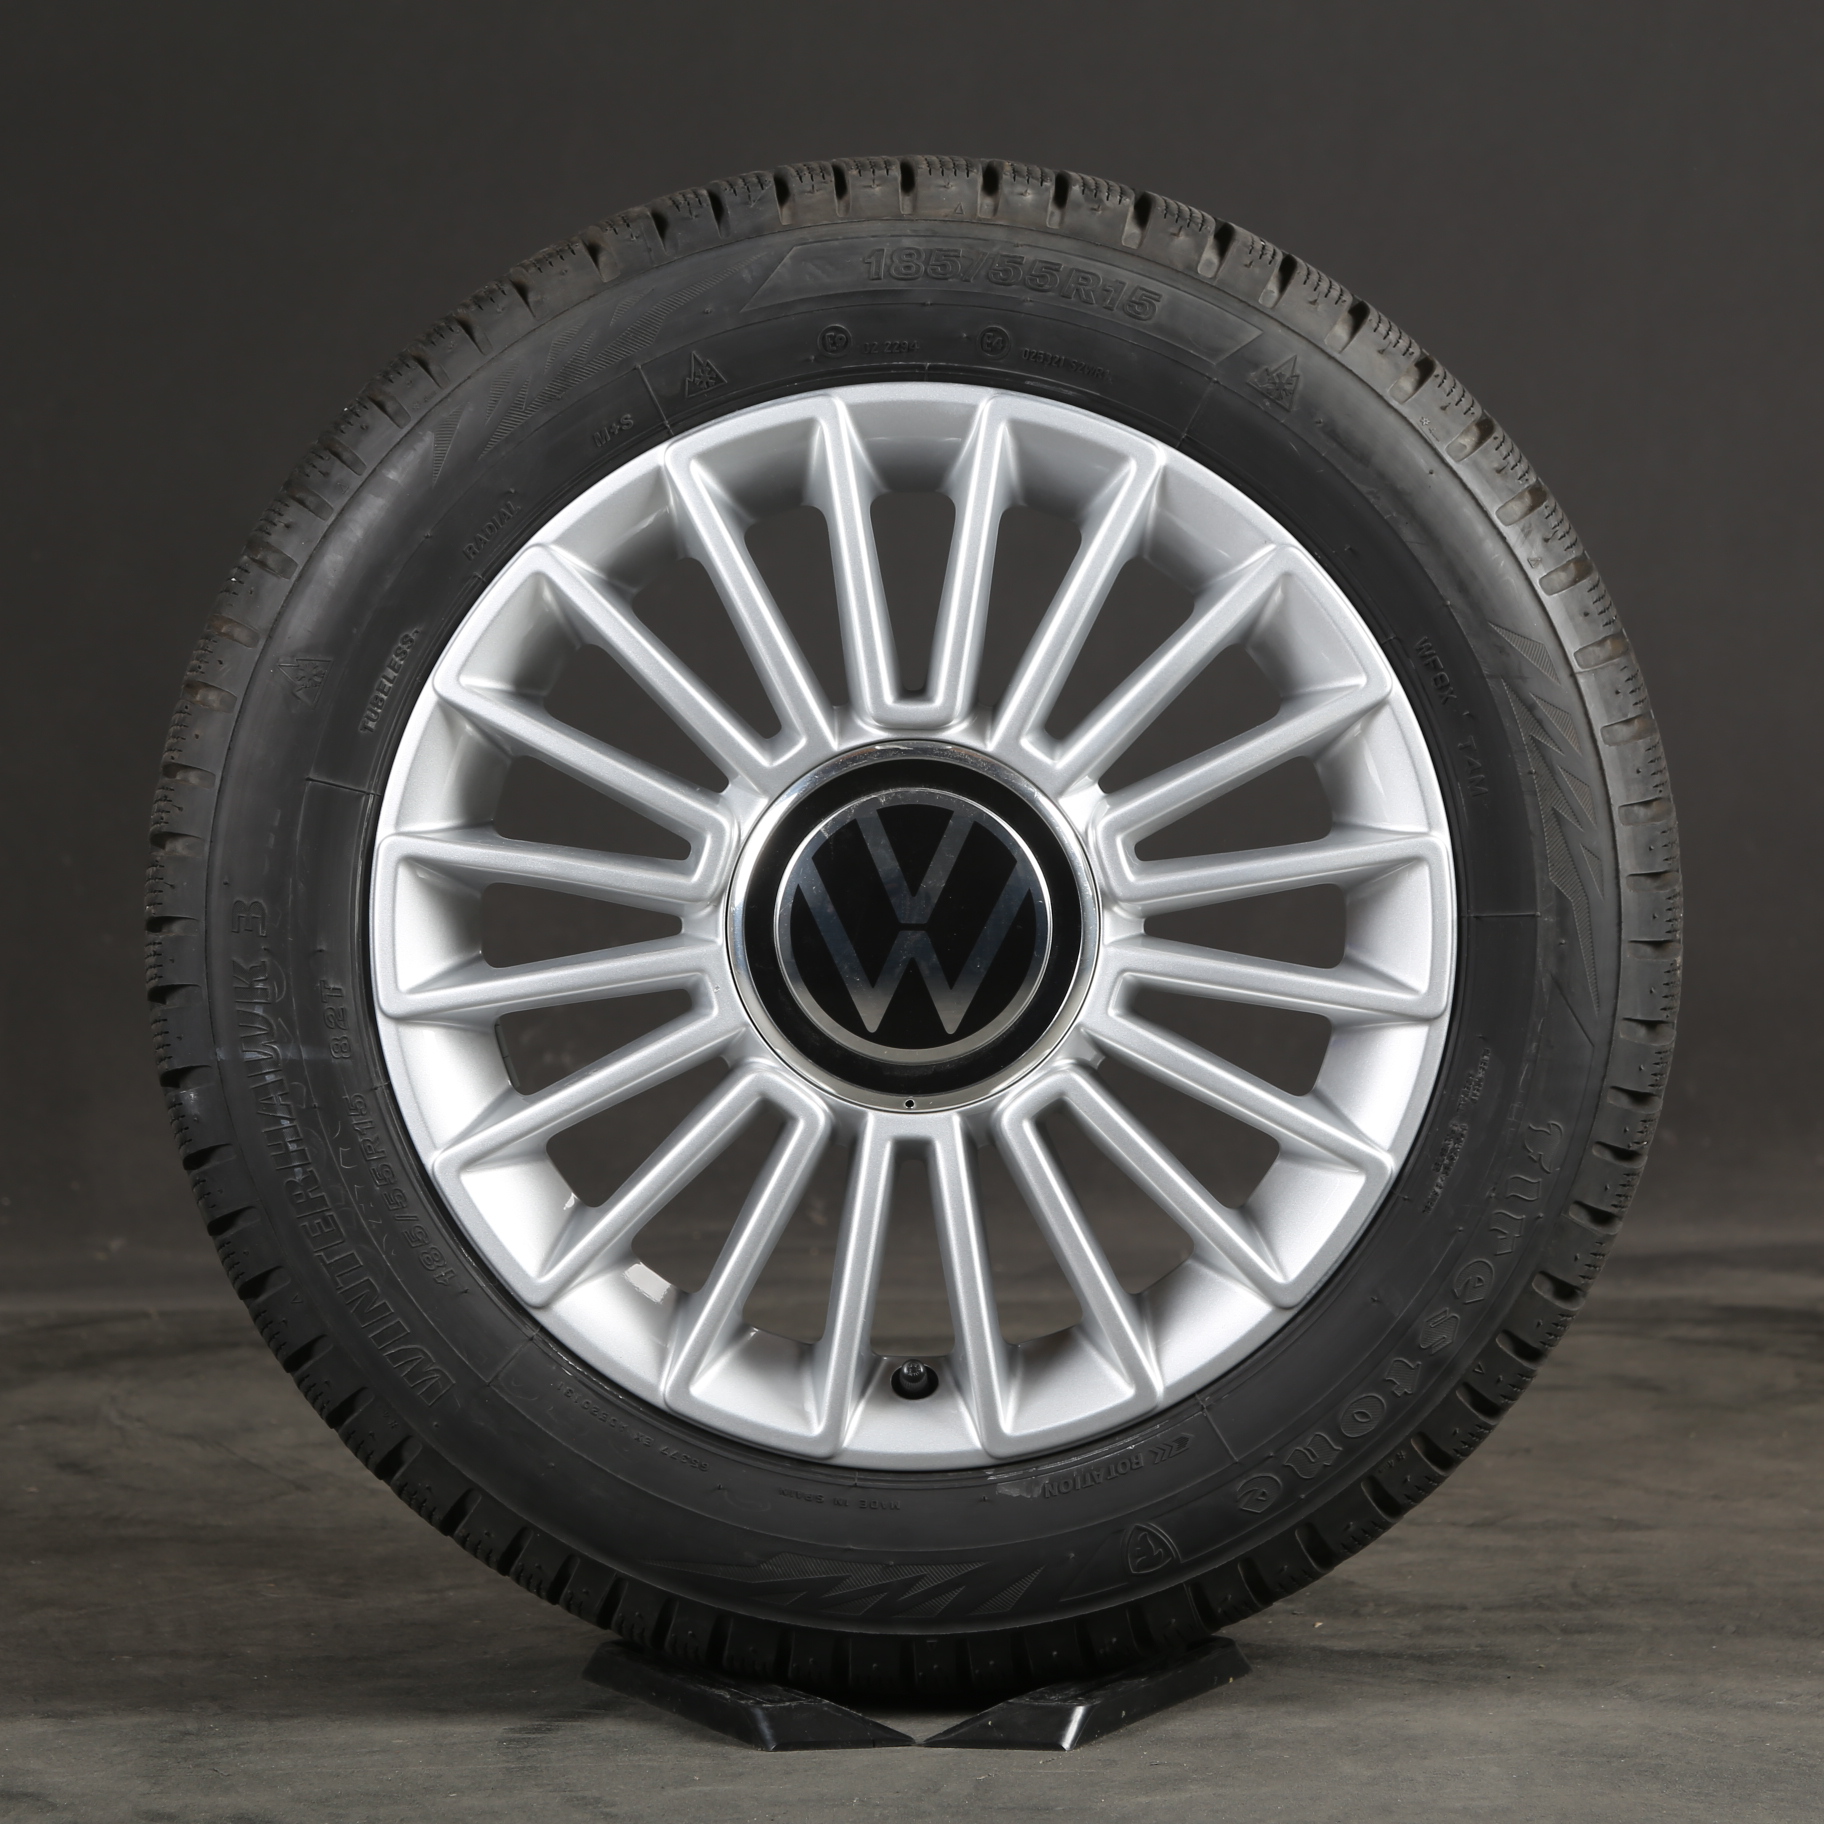 UP Design Winterreifen Spoke VW Winterräder Zoll 15